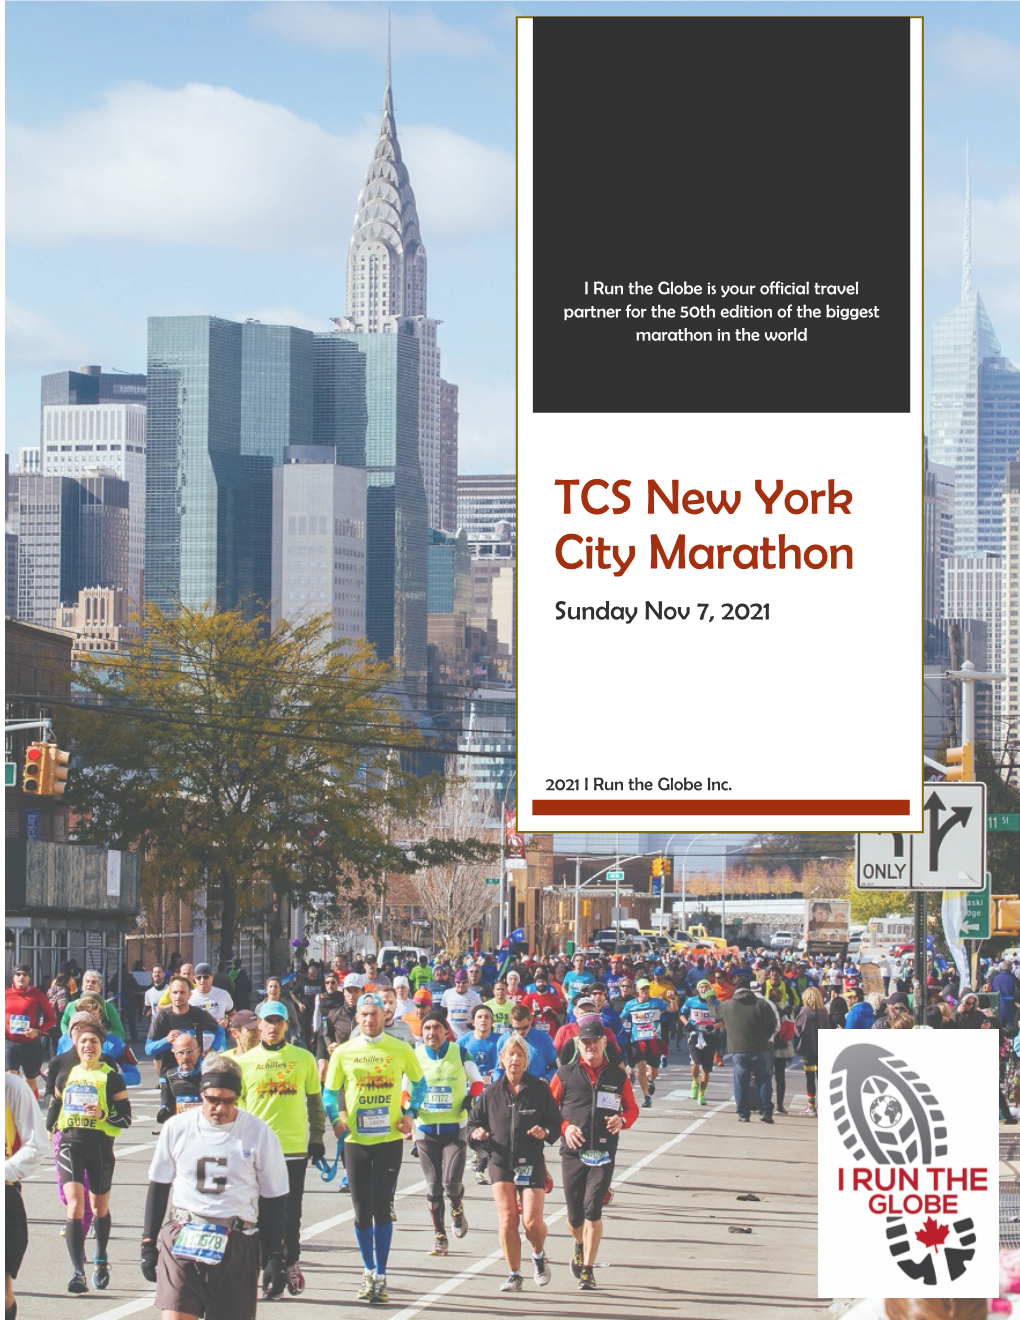 TCS New York City Marathon Sunday Nov 7, 2021